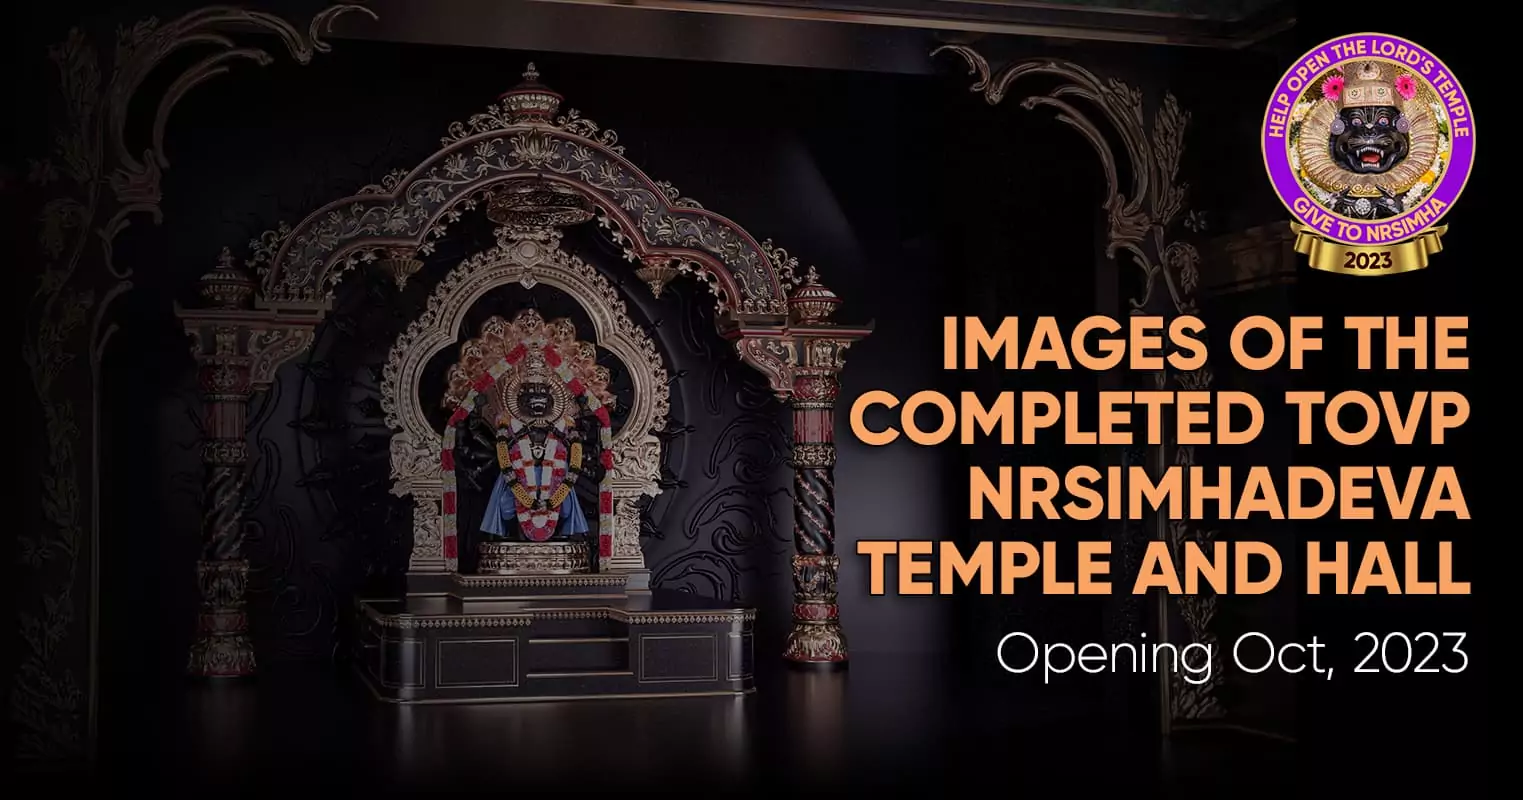 Изображения завершенного храма и зала ХВП Нрисимхадевы